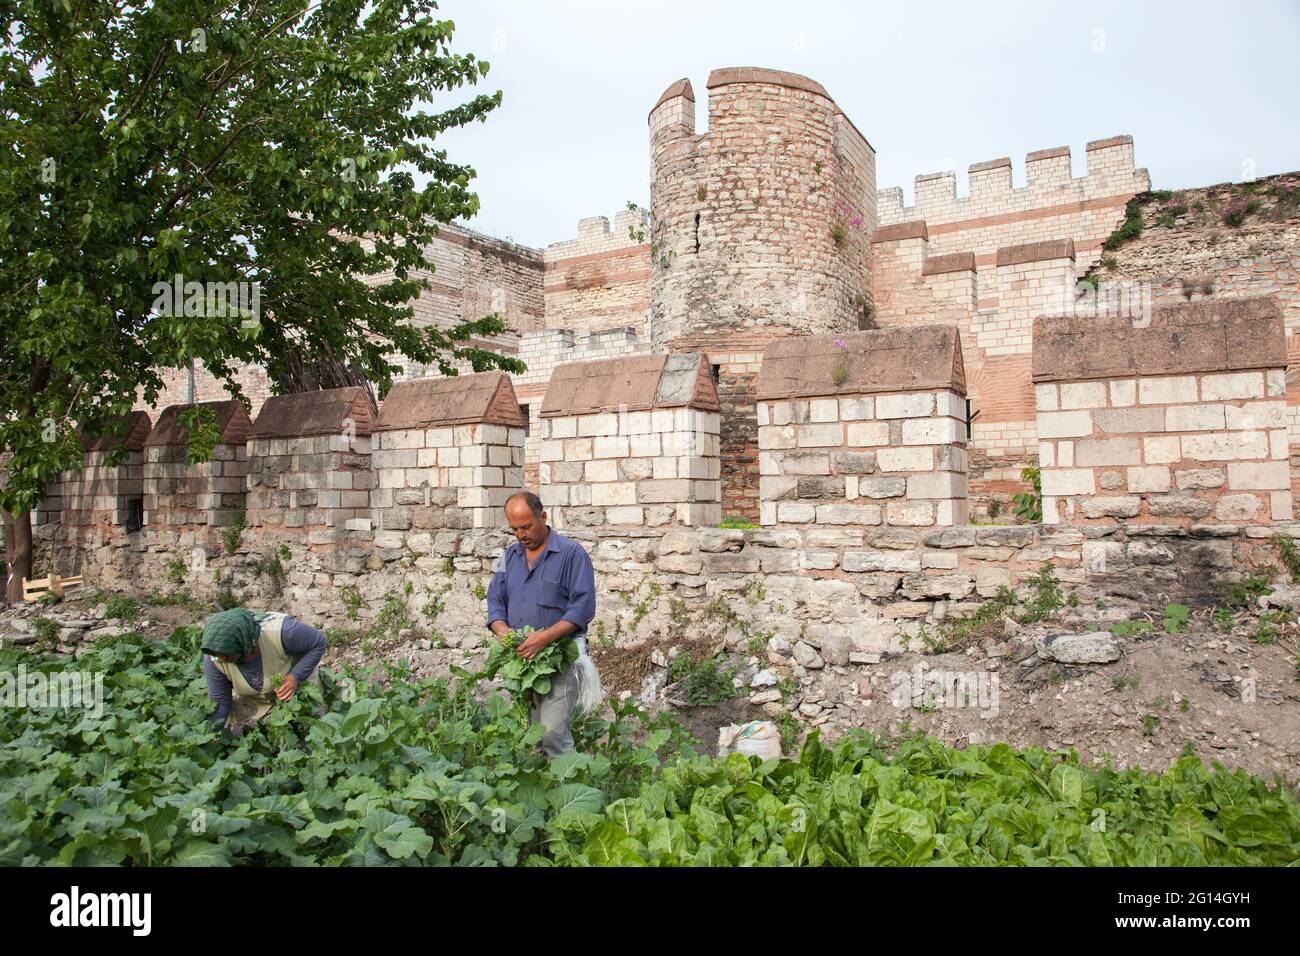 Fatih,Istanbul-Turquie - 05-20-2017 :vue sur les remparts et le jardin potager de la ville historique d'Istanbul Banque D'Images